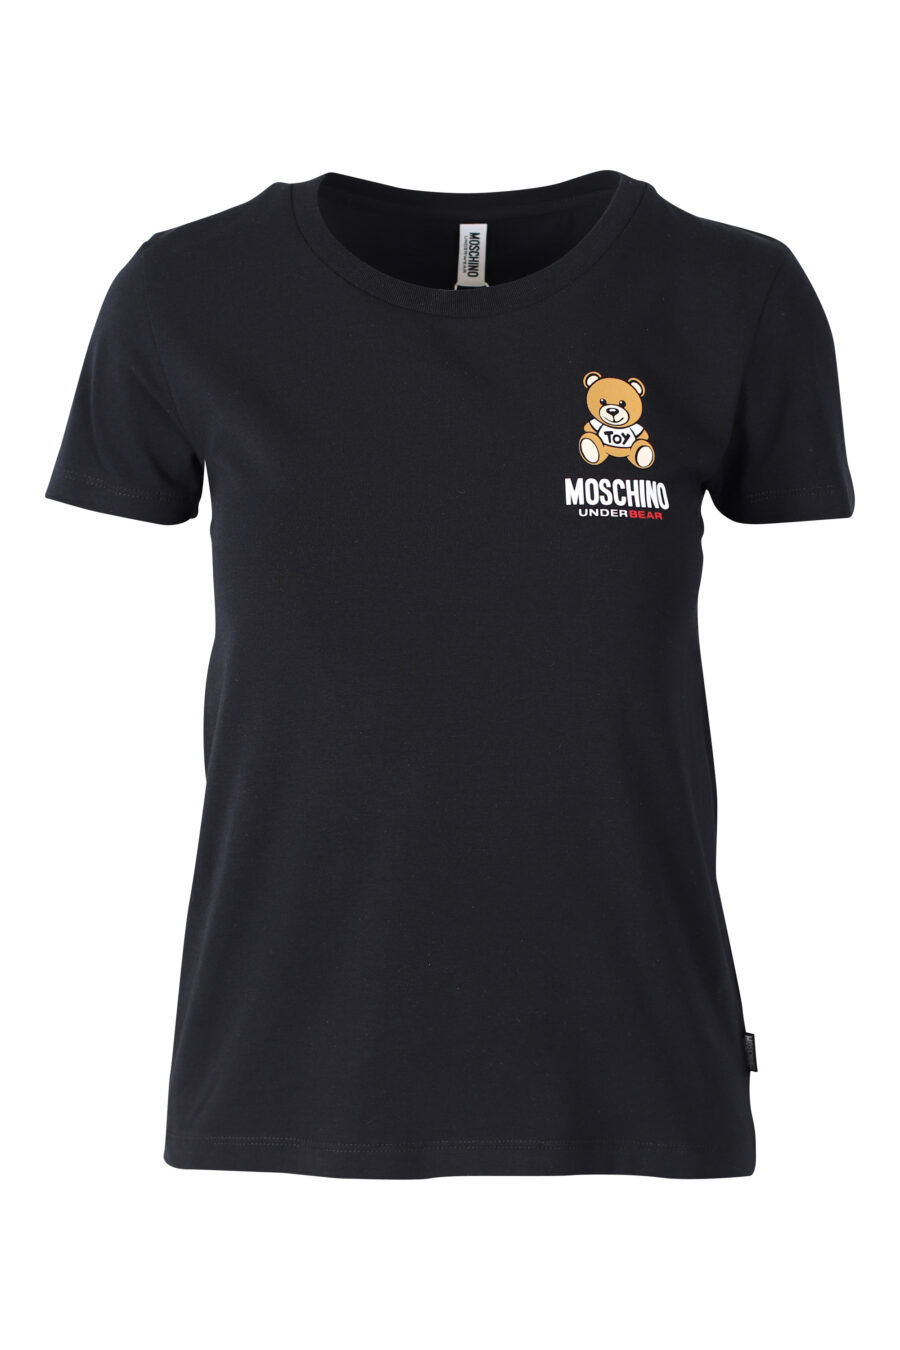 Schwarzes, schmal geschnittenes T-Shirt mit Bärenlogo auf dem Unterarm - IMG 2370